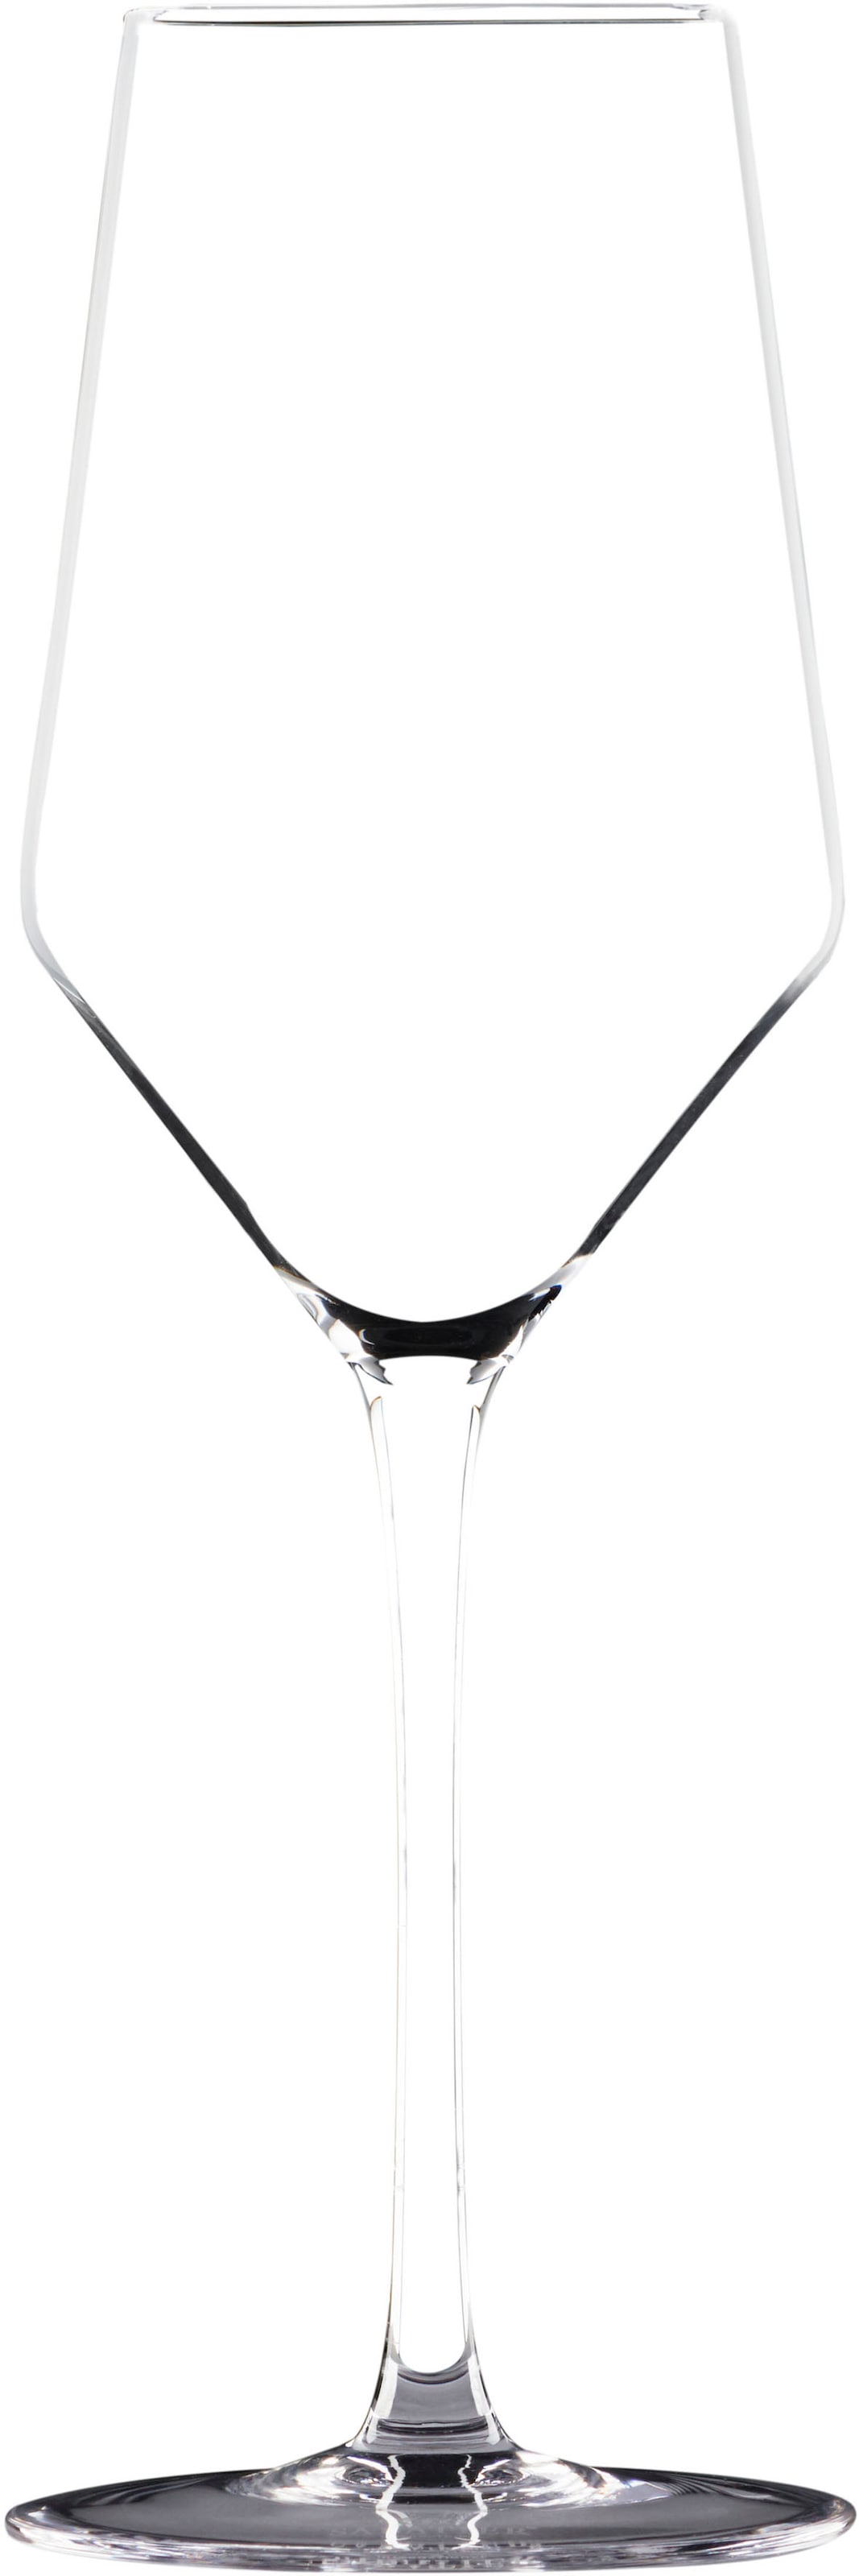 SABATIER International Weißweinglas, (Set, 2 tlg., 2 x Weißwein Kristallglas), Inhalt 0,4 L, 2-teilig